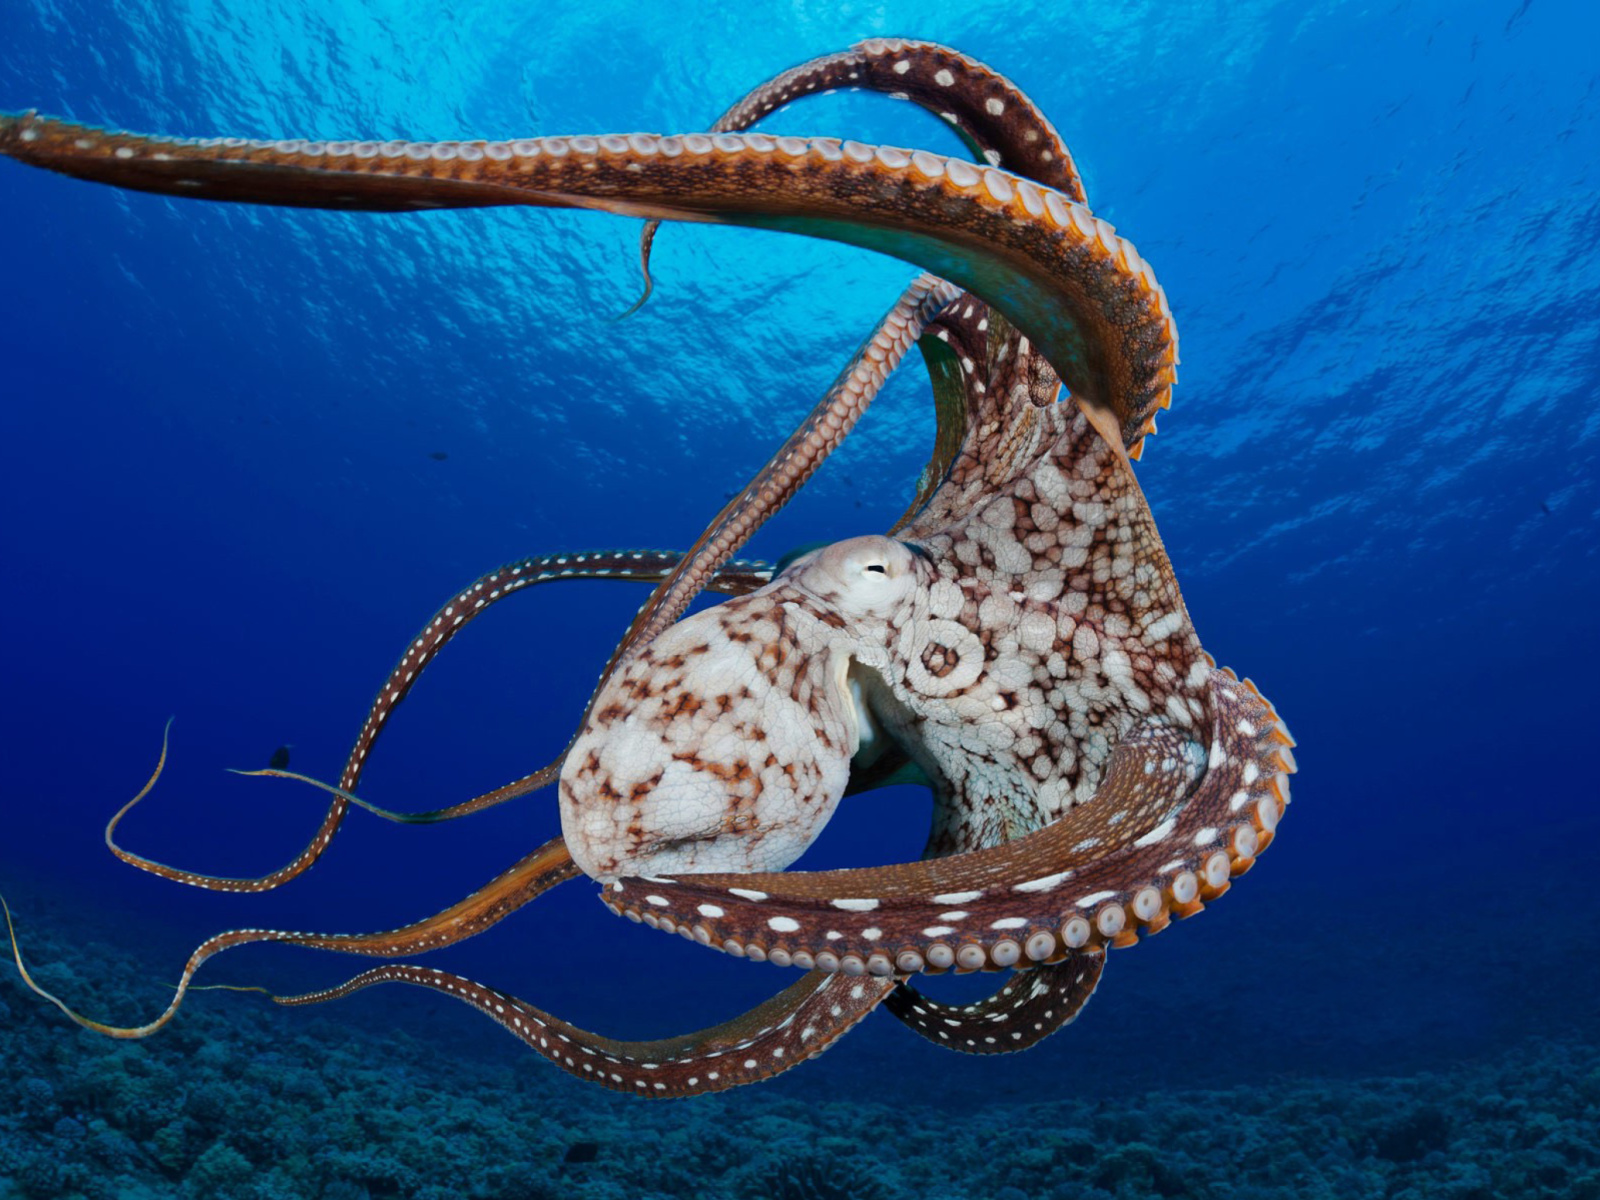 Octopus in the Atlantic Ocean wallpaper 1600x1200